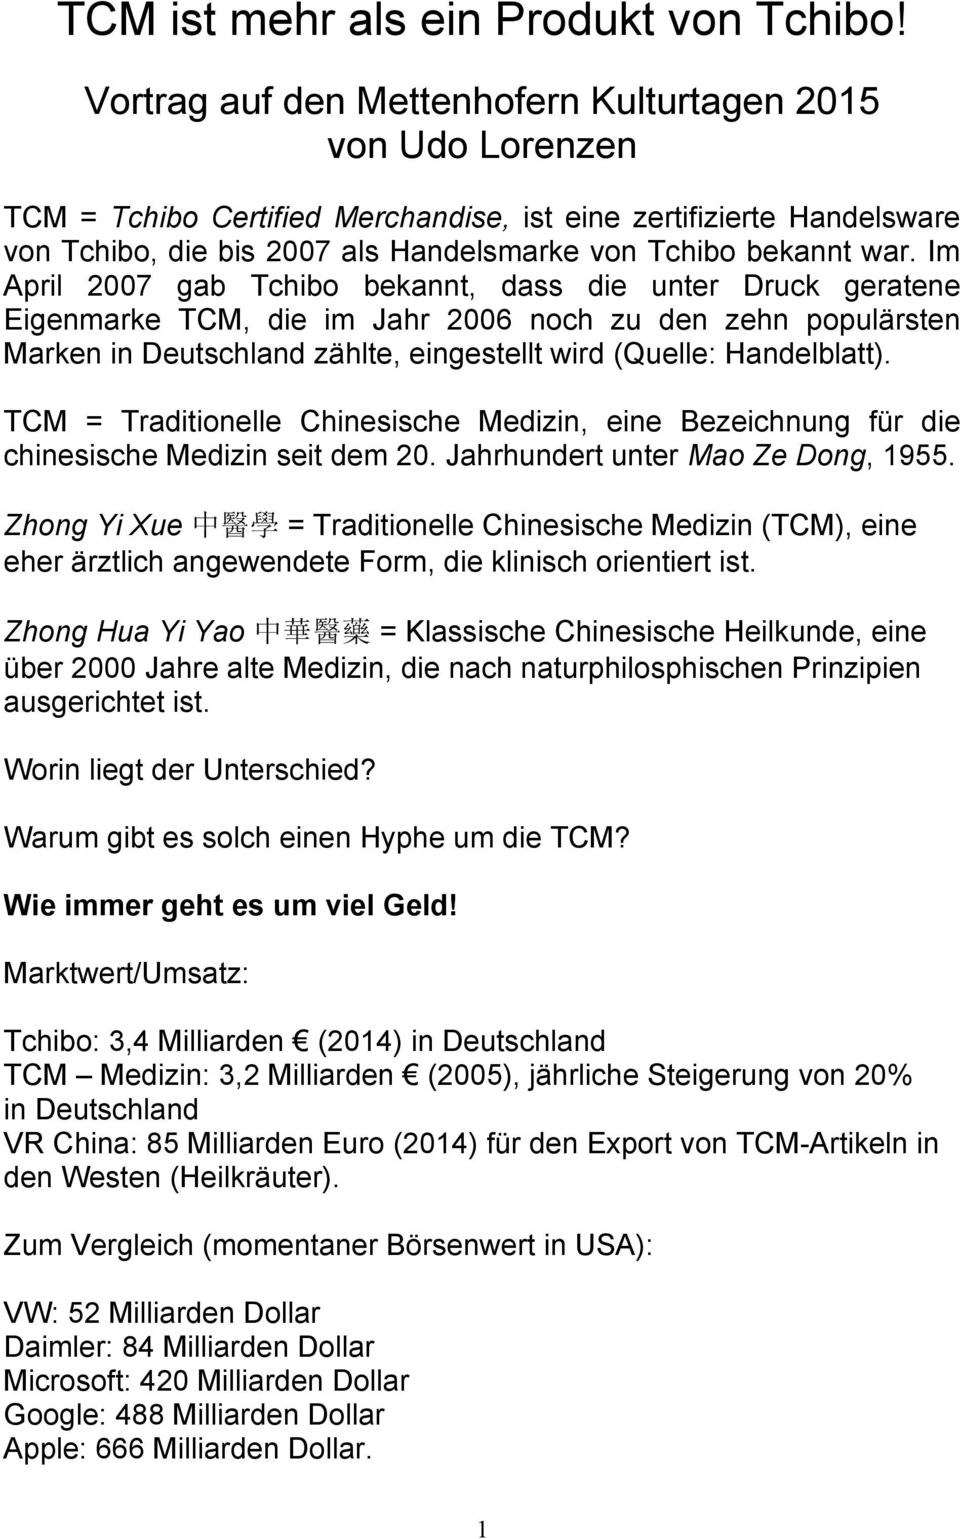 Im April 2007 gab Tchibo bekannt, dass die unter Druck geratene Eigenmarke TCM, die im Jahr 2006 noch zu den zehn populärsten Marken in Deutschland zählte, eingestellt wird (Quelle: Handelblatt).